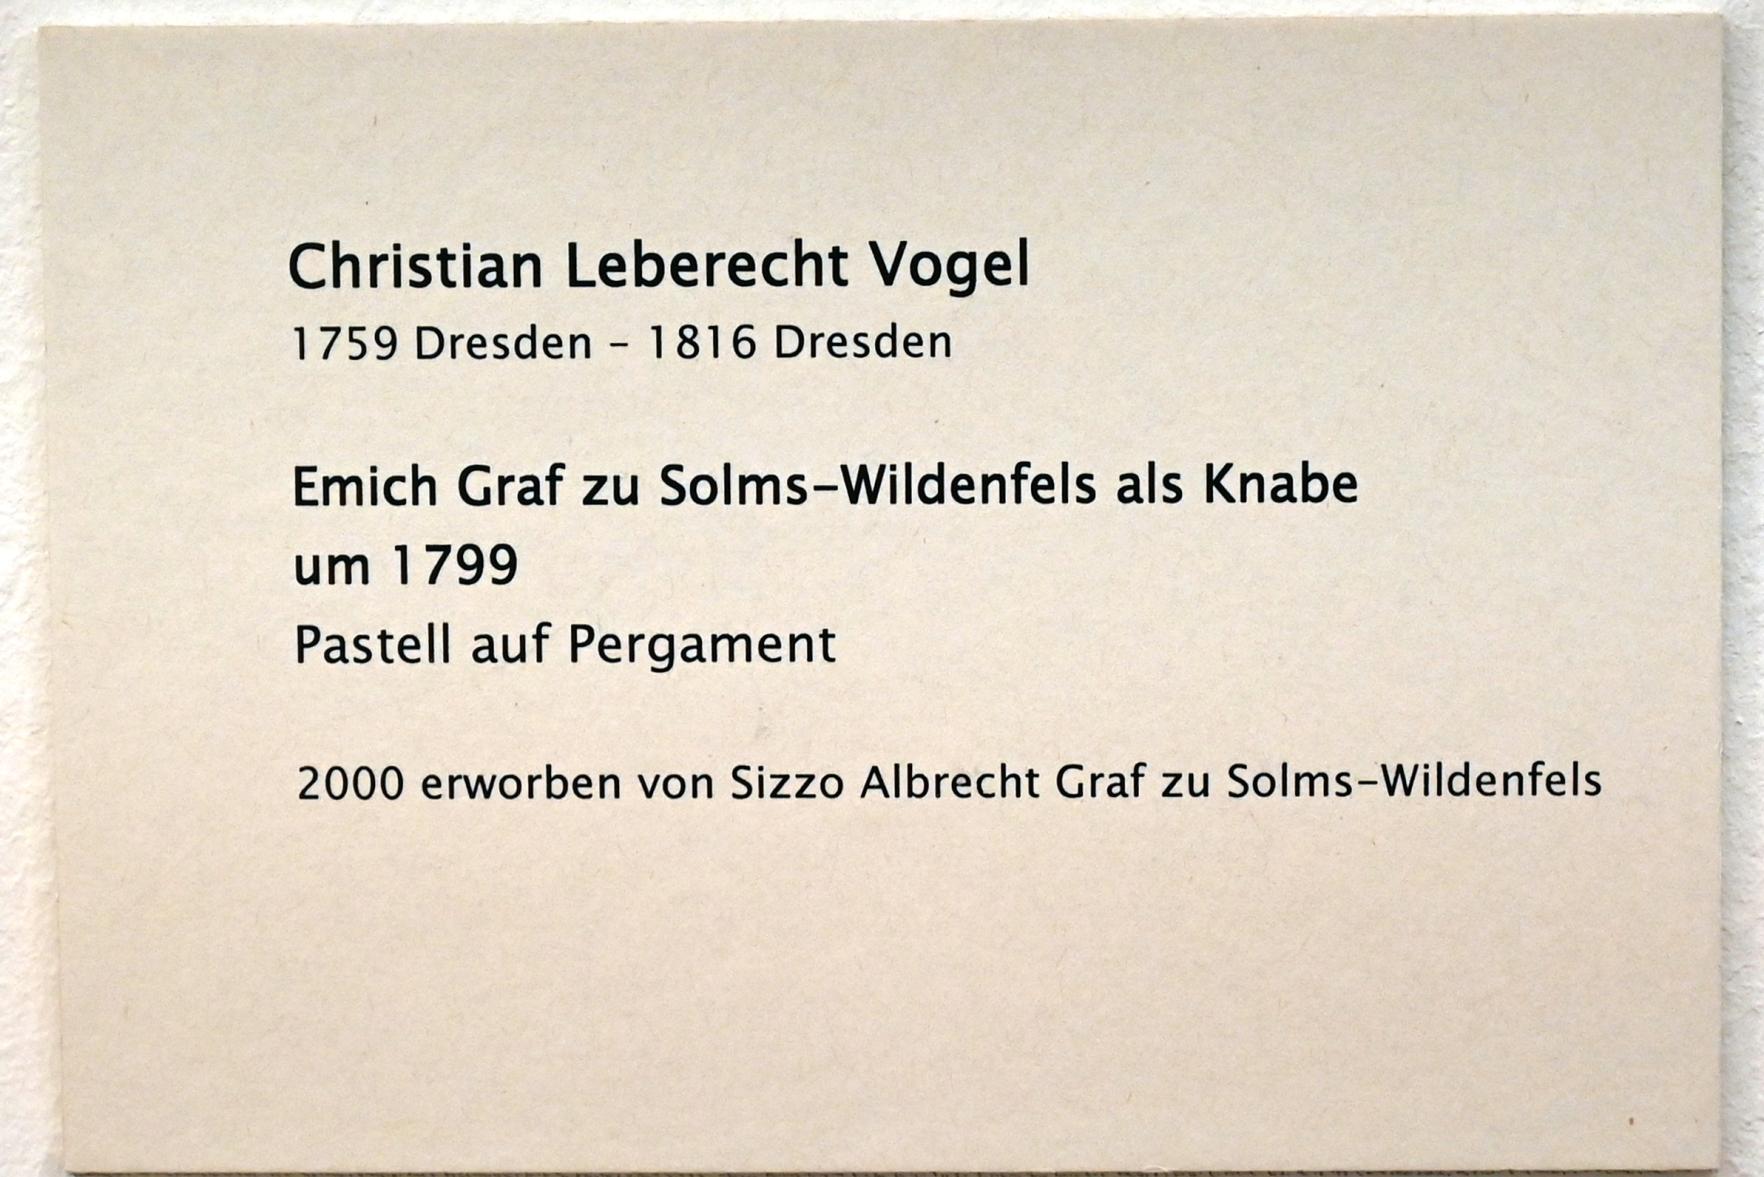 Christian Leberecht Vogel (1799–1814), Emich Graf zu Solms-Wildenfels als Knabe, Zwickau, Kunstsammlungen, Zeit der Empfindsamkeit, um 1799, Bild 2/2